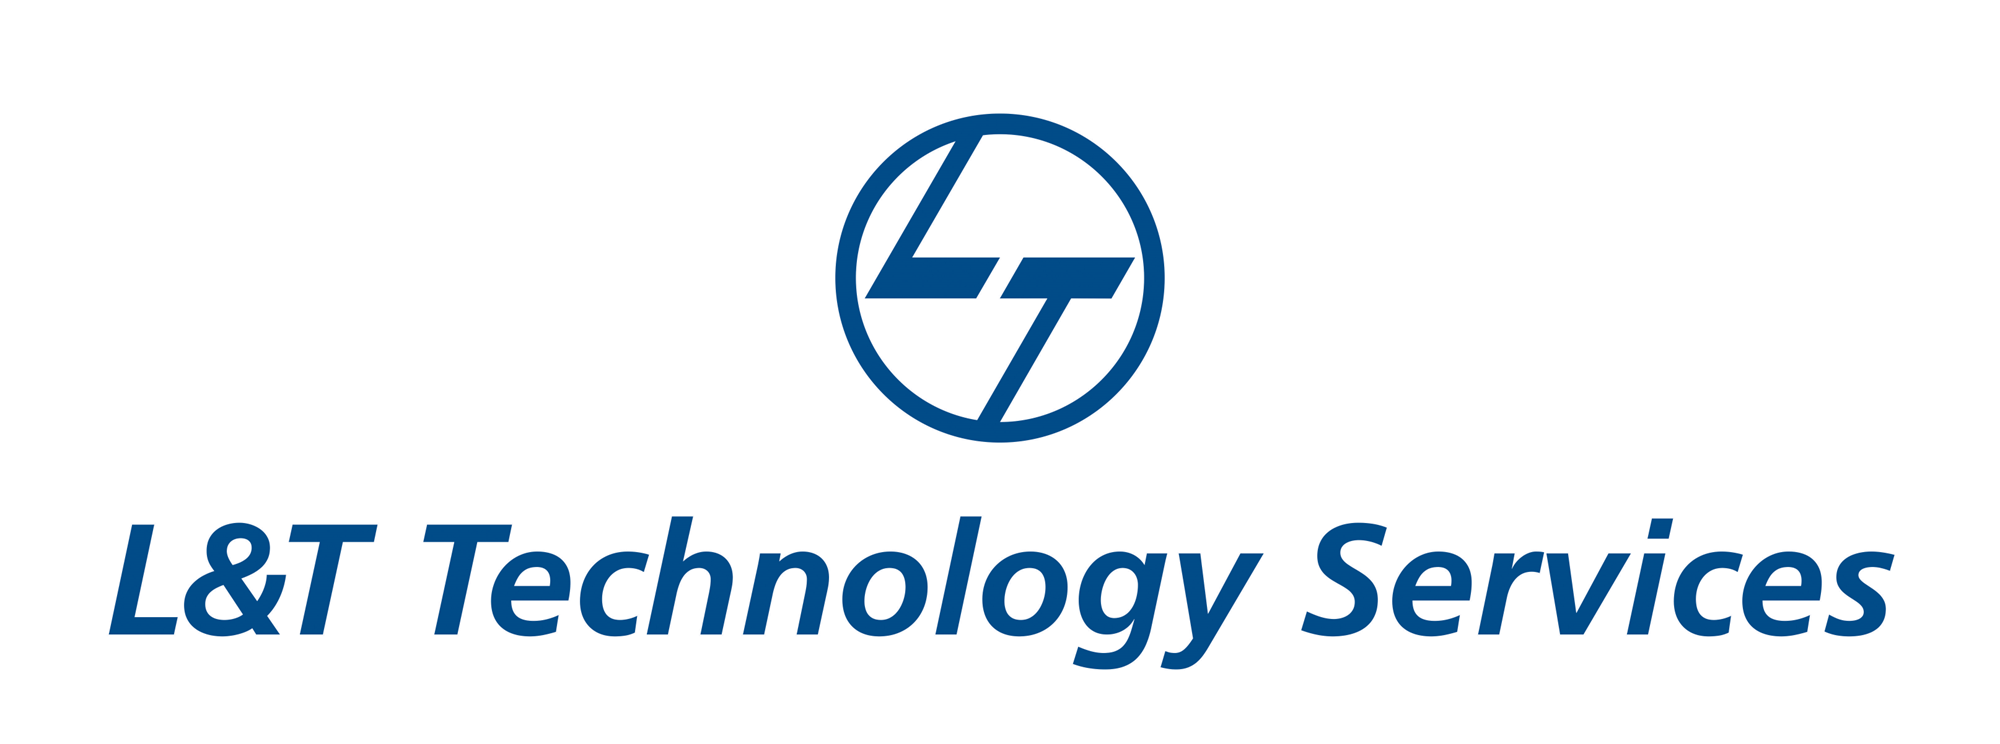 L & T Technology Services Ltd